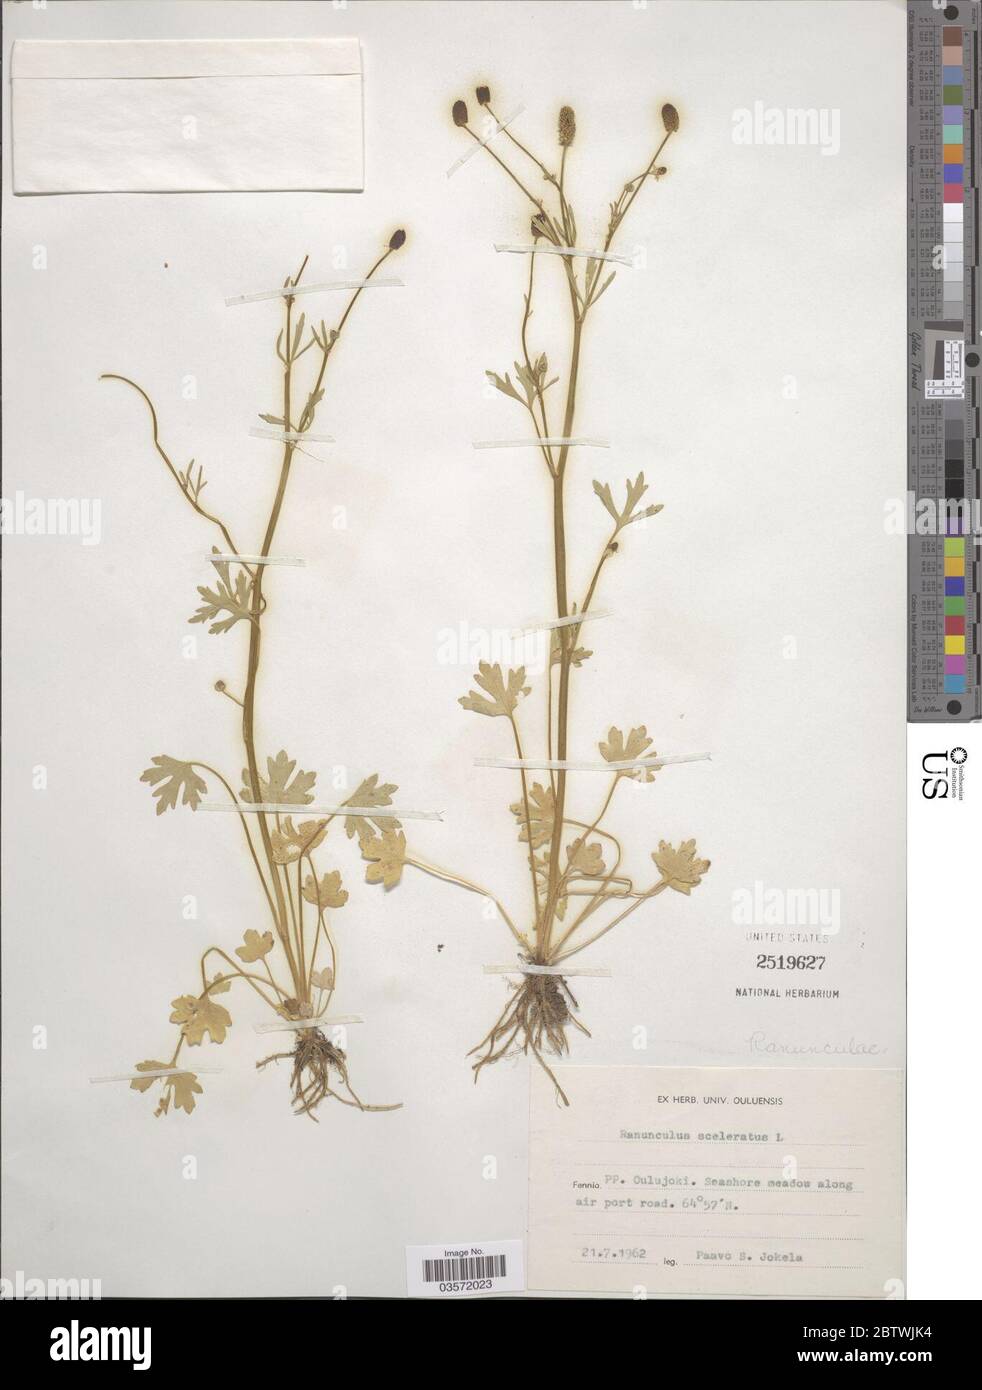 Ranunculus sceleratus L. Stock Photo